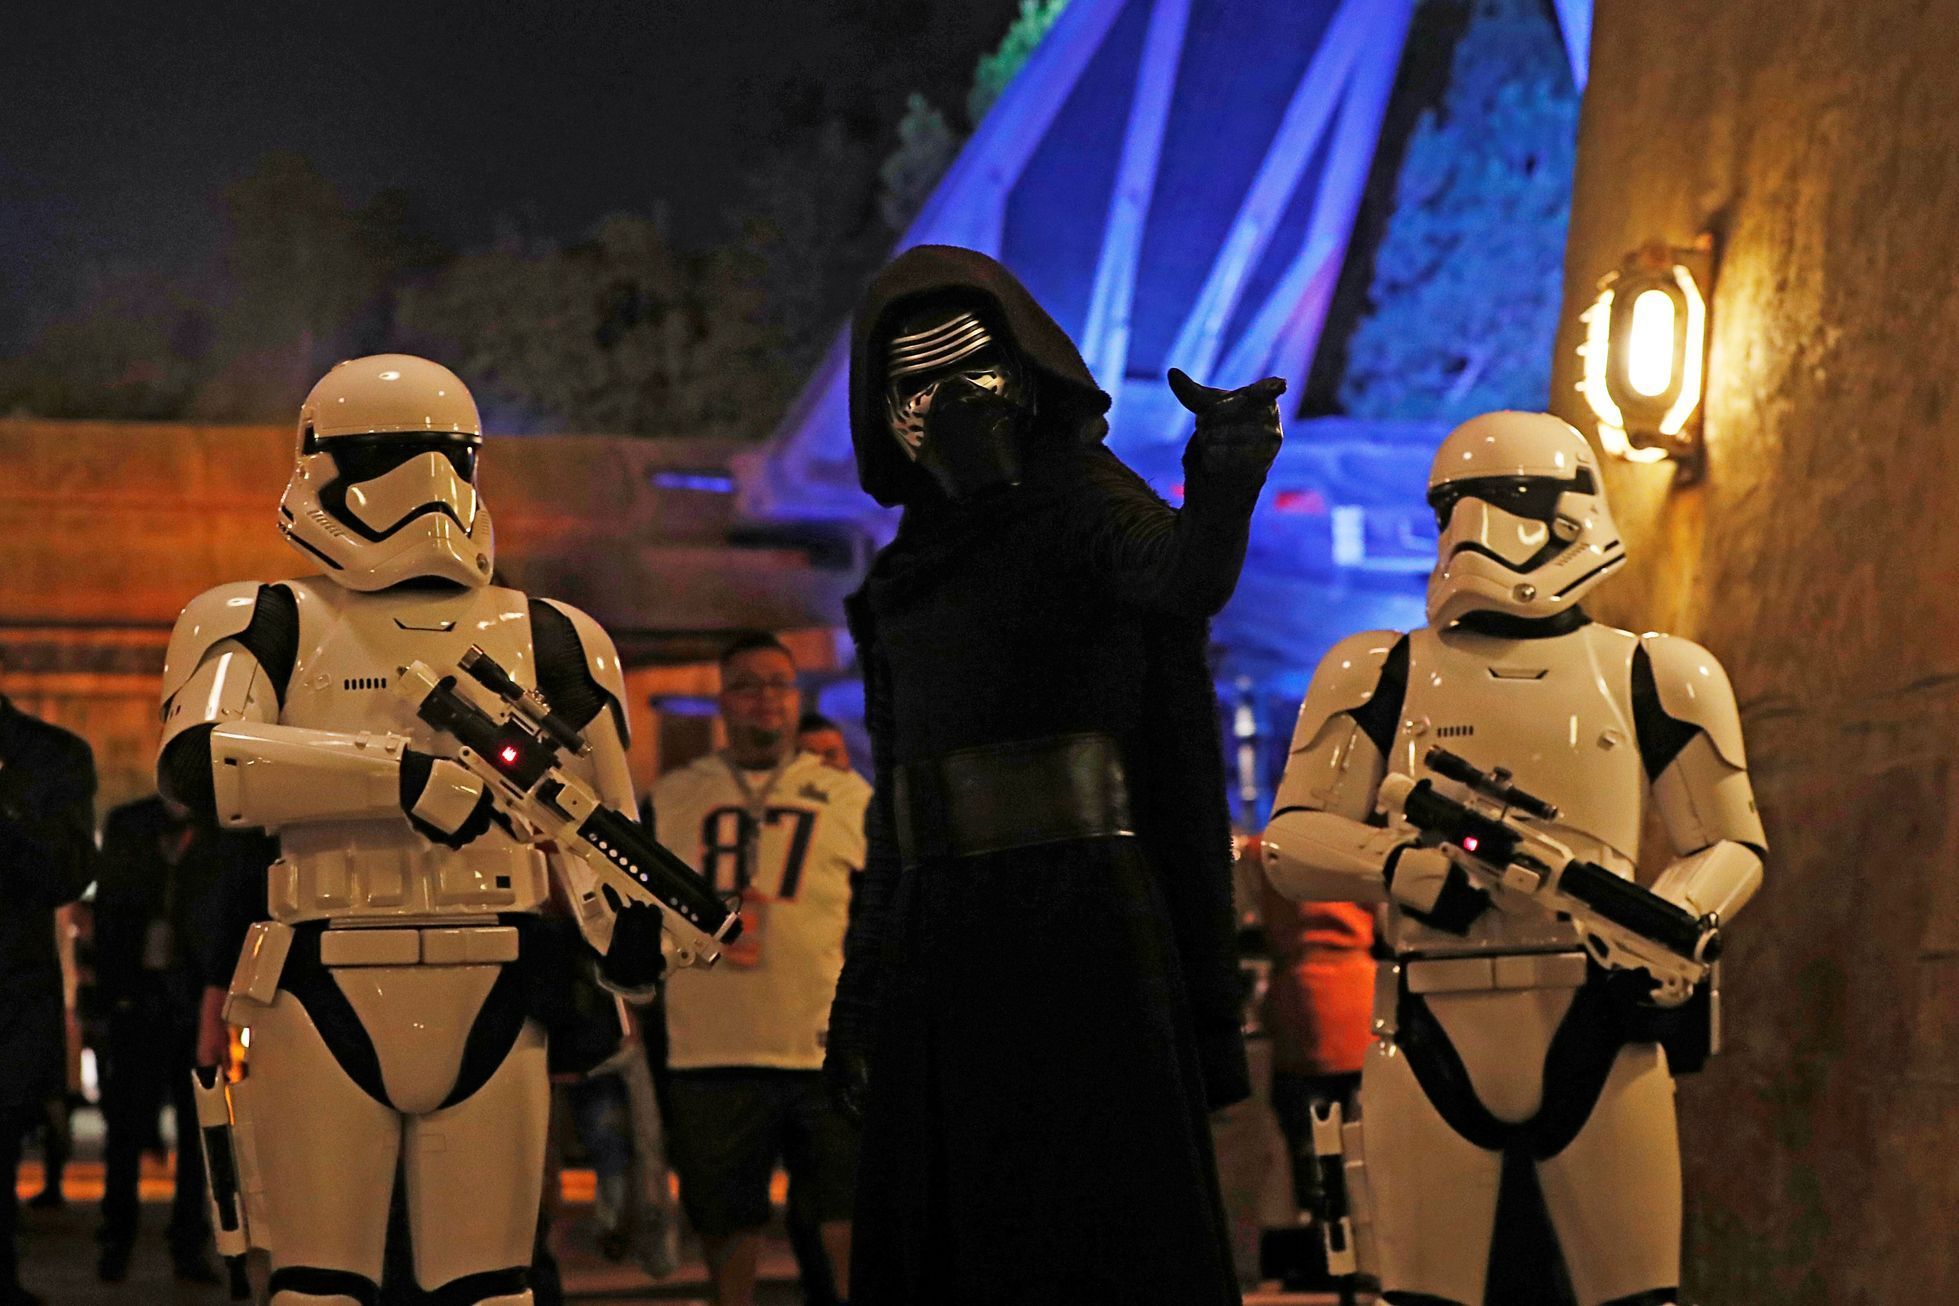 Star Wars: Galaxy's Edge at Disneyland Park in Anaheim